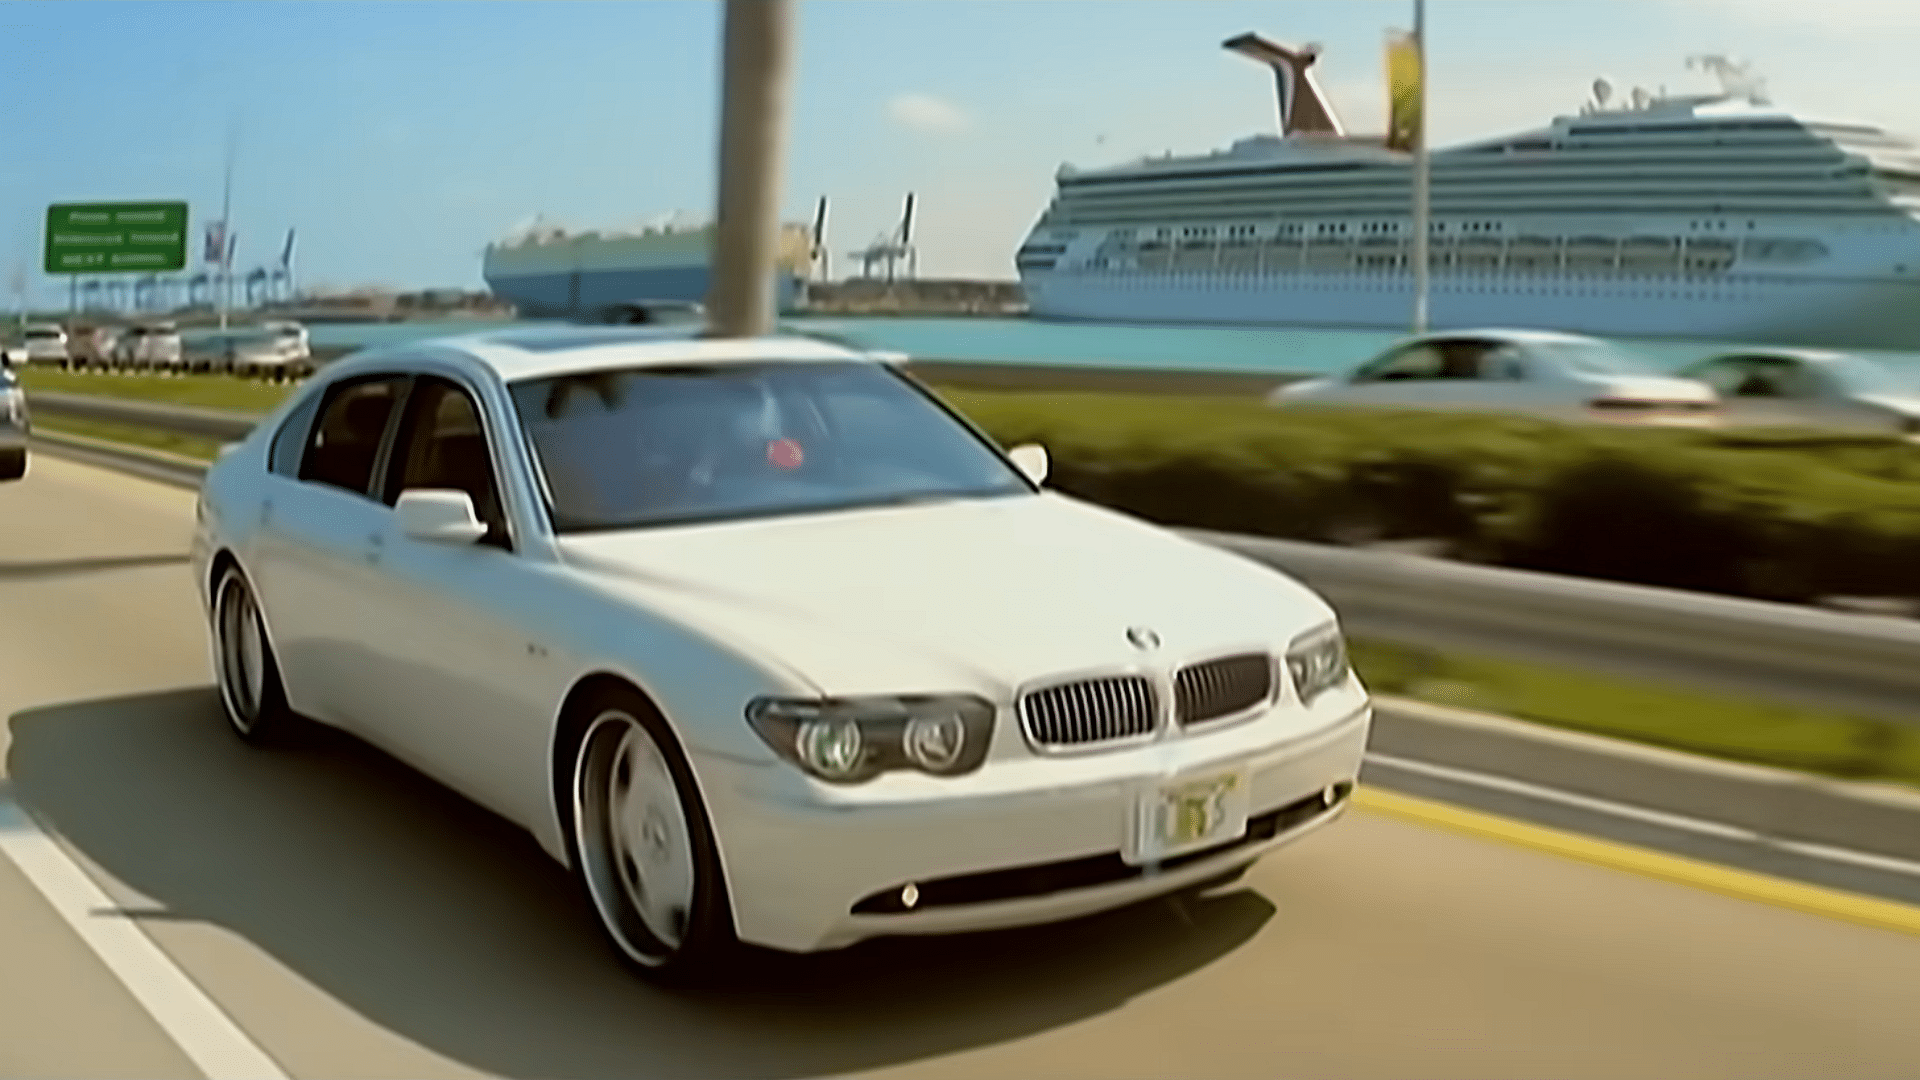 Rick Ross' BMW 745Li in his music video 'Hustlin'